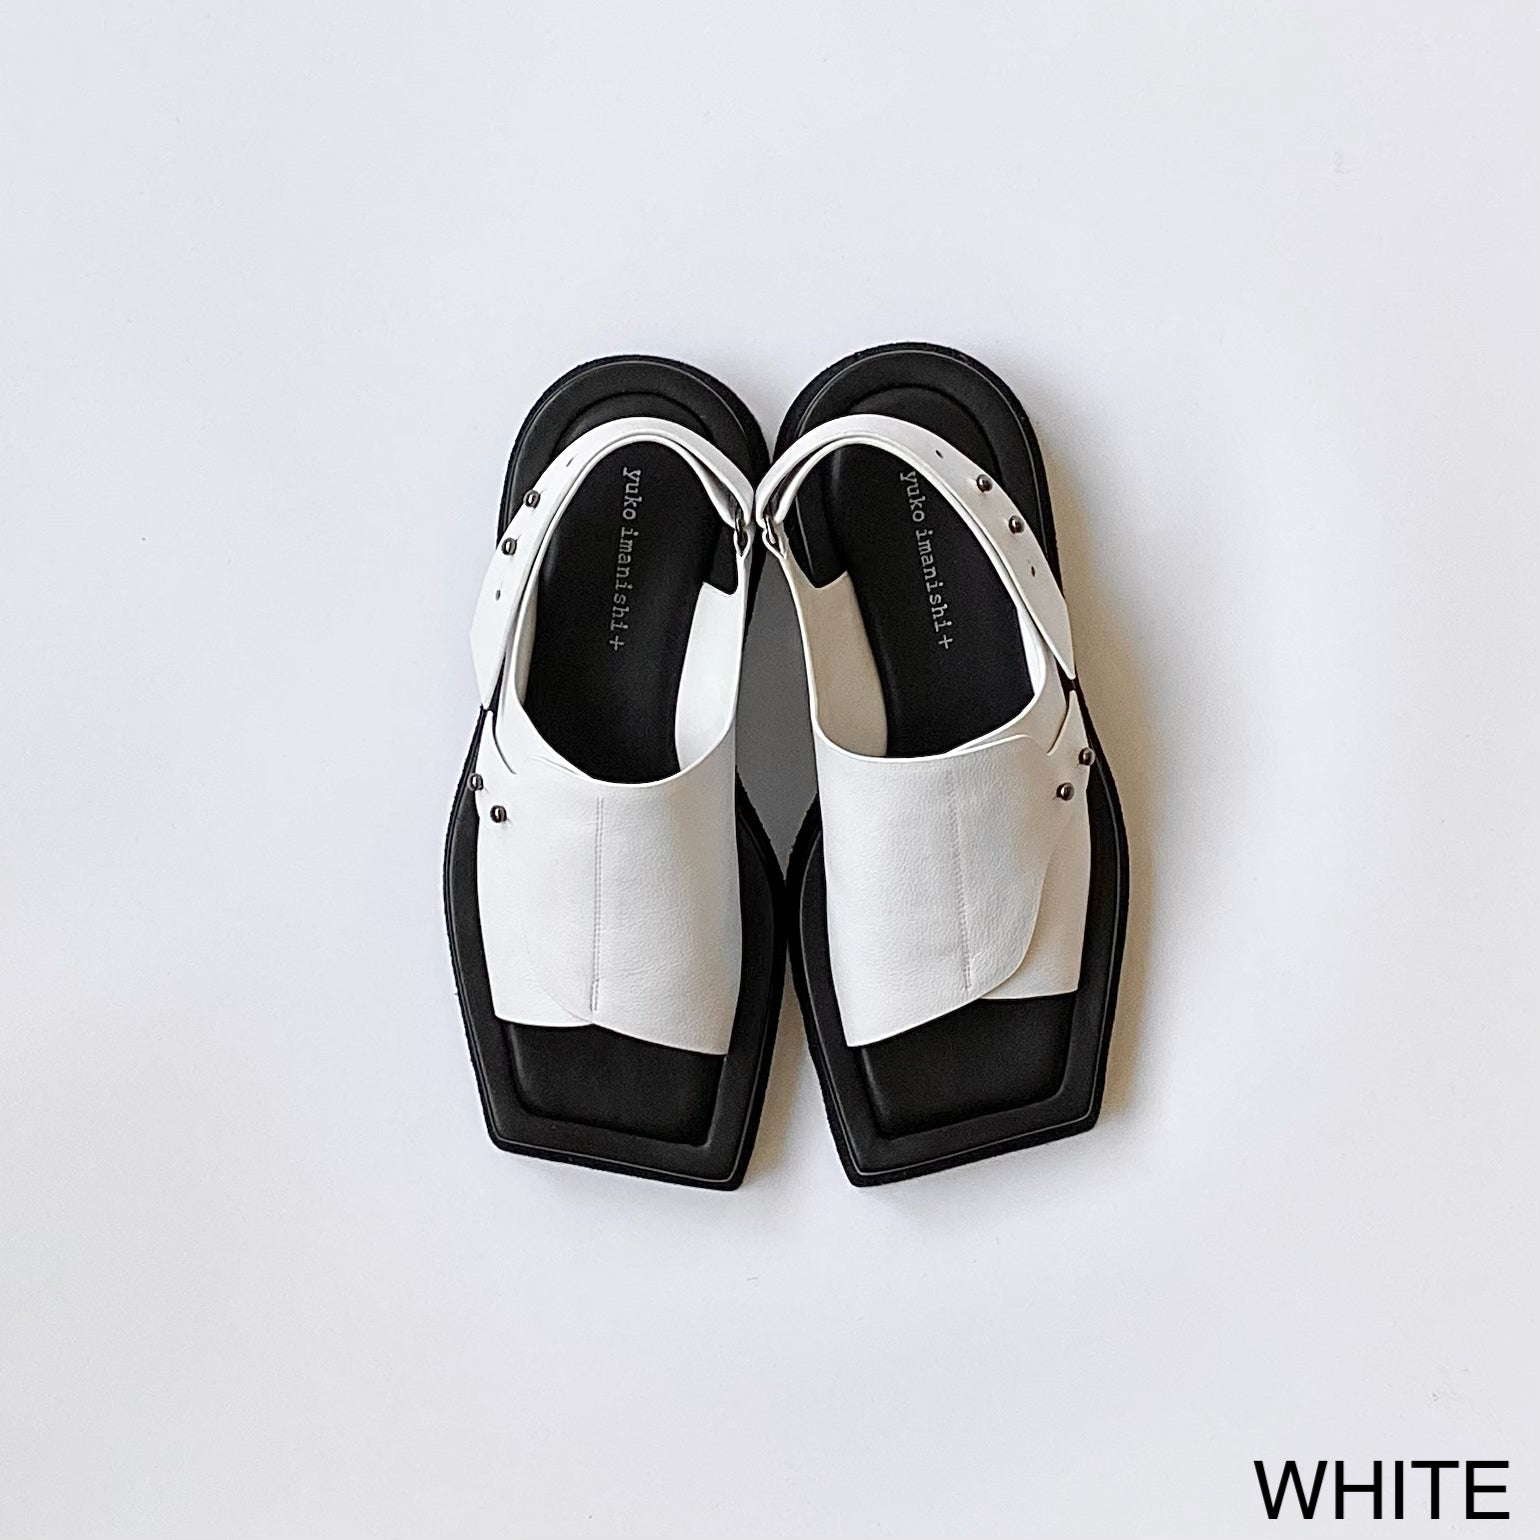 WHITE / 35 (22.2cm)